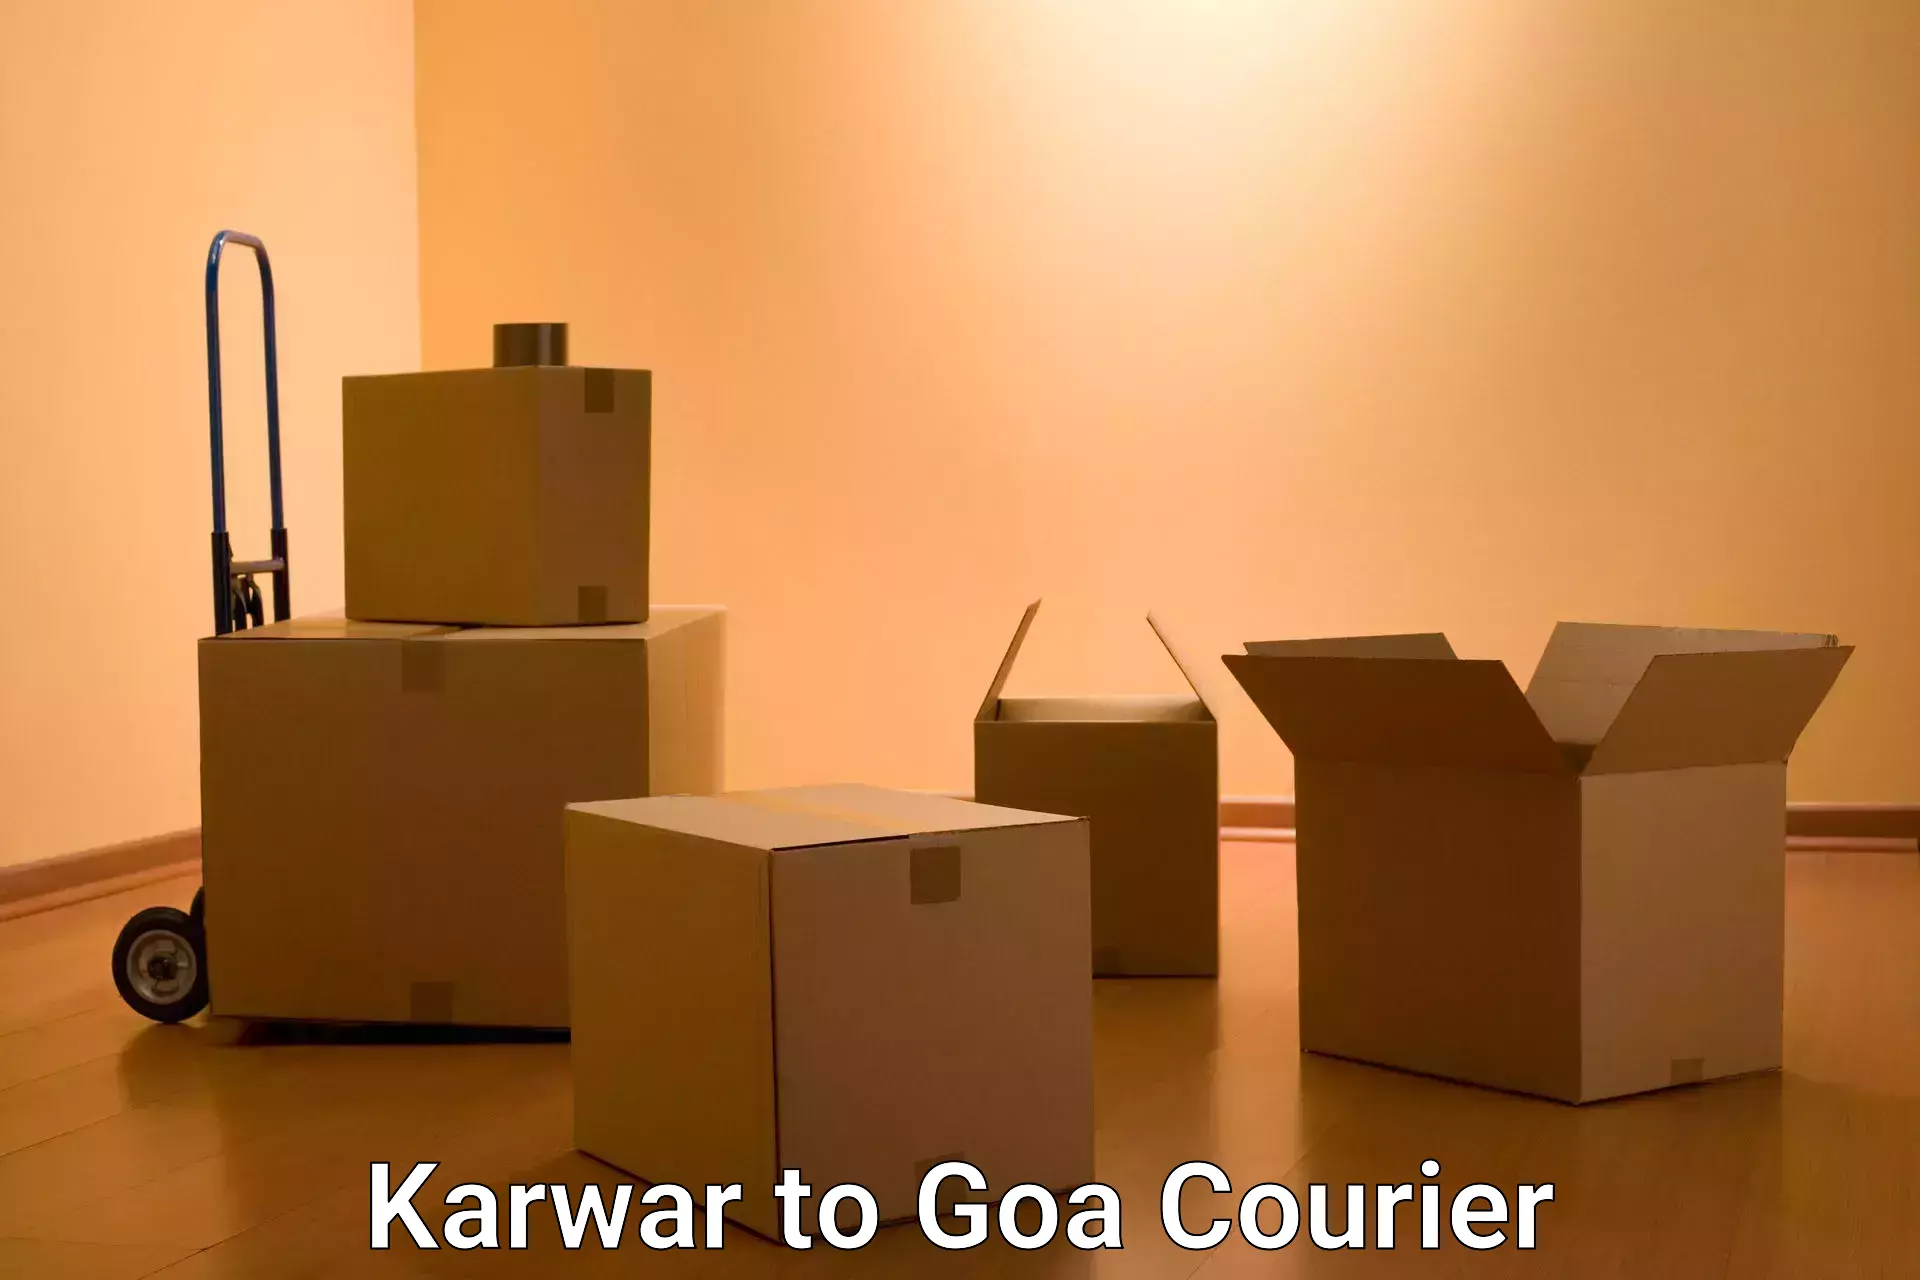 State-of-the-art courier technology Karwar to Vasco da Gama